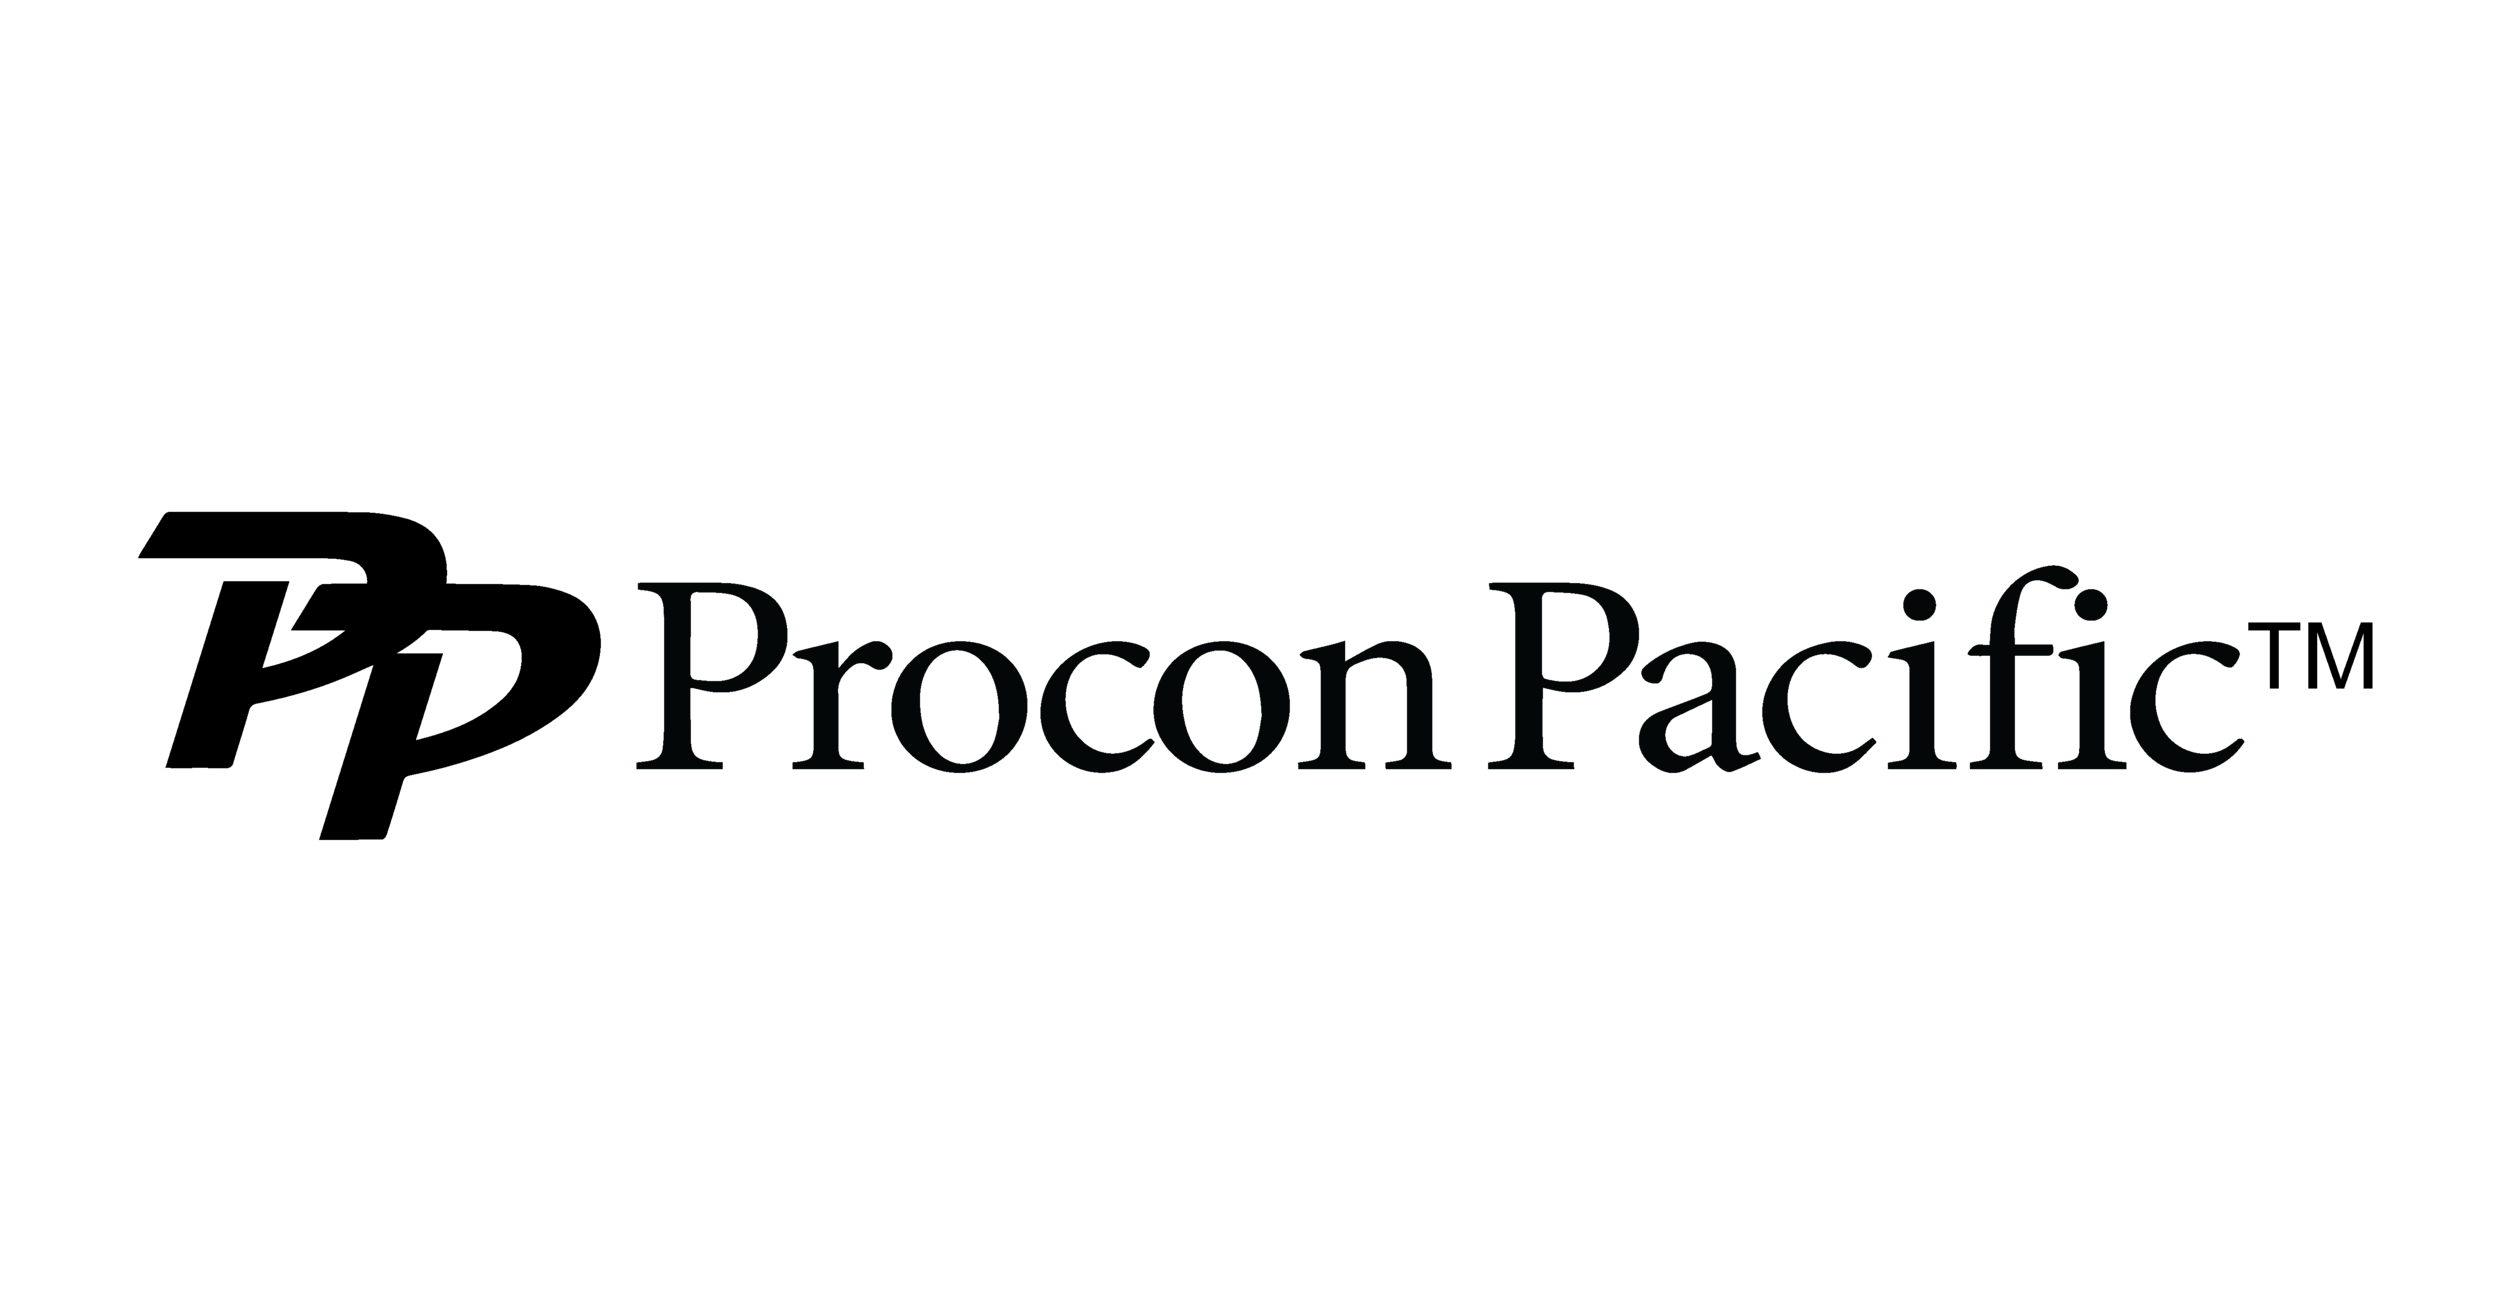 Procon Pacific